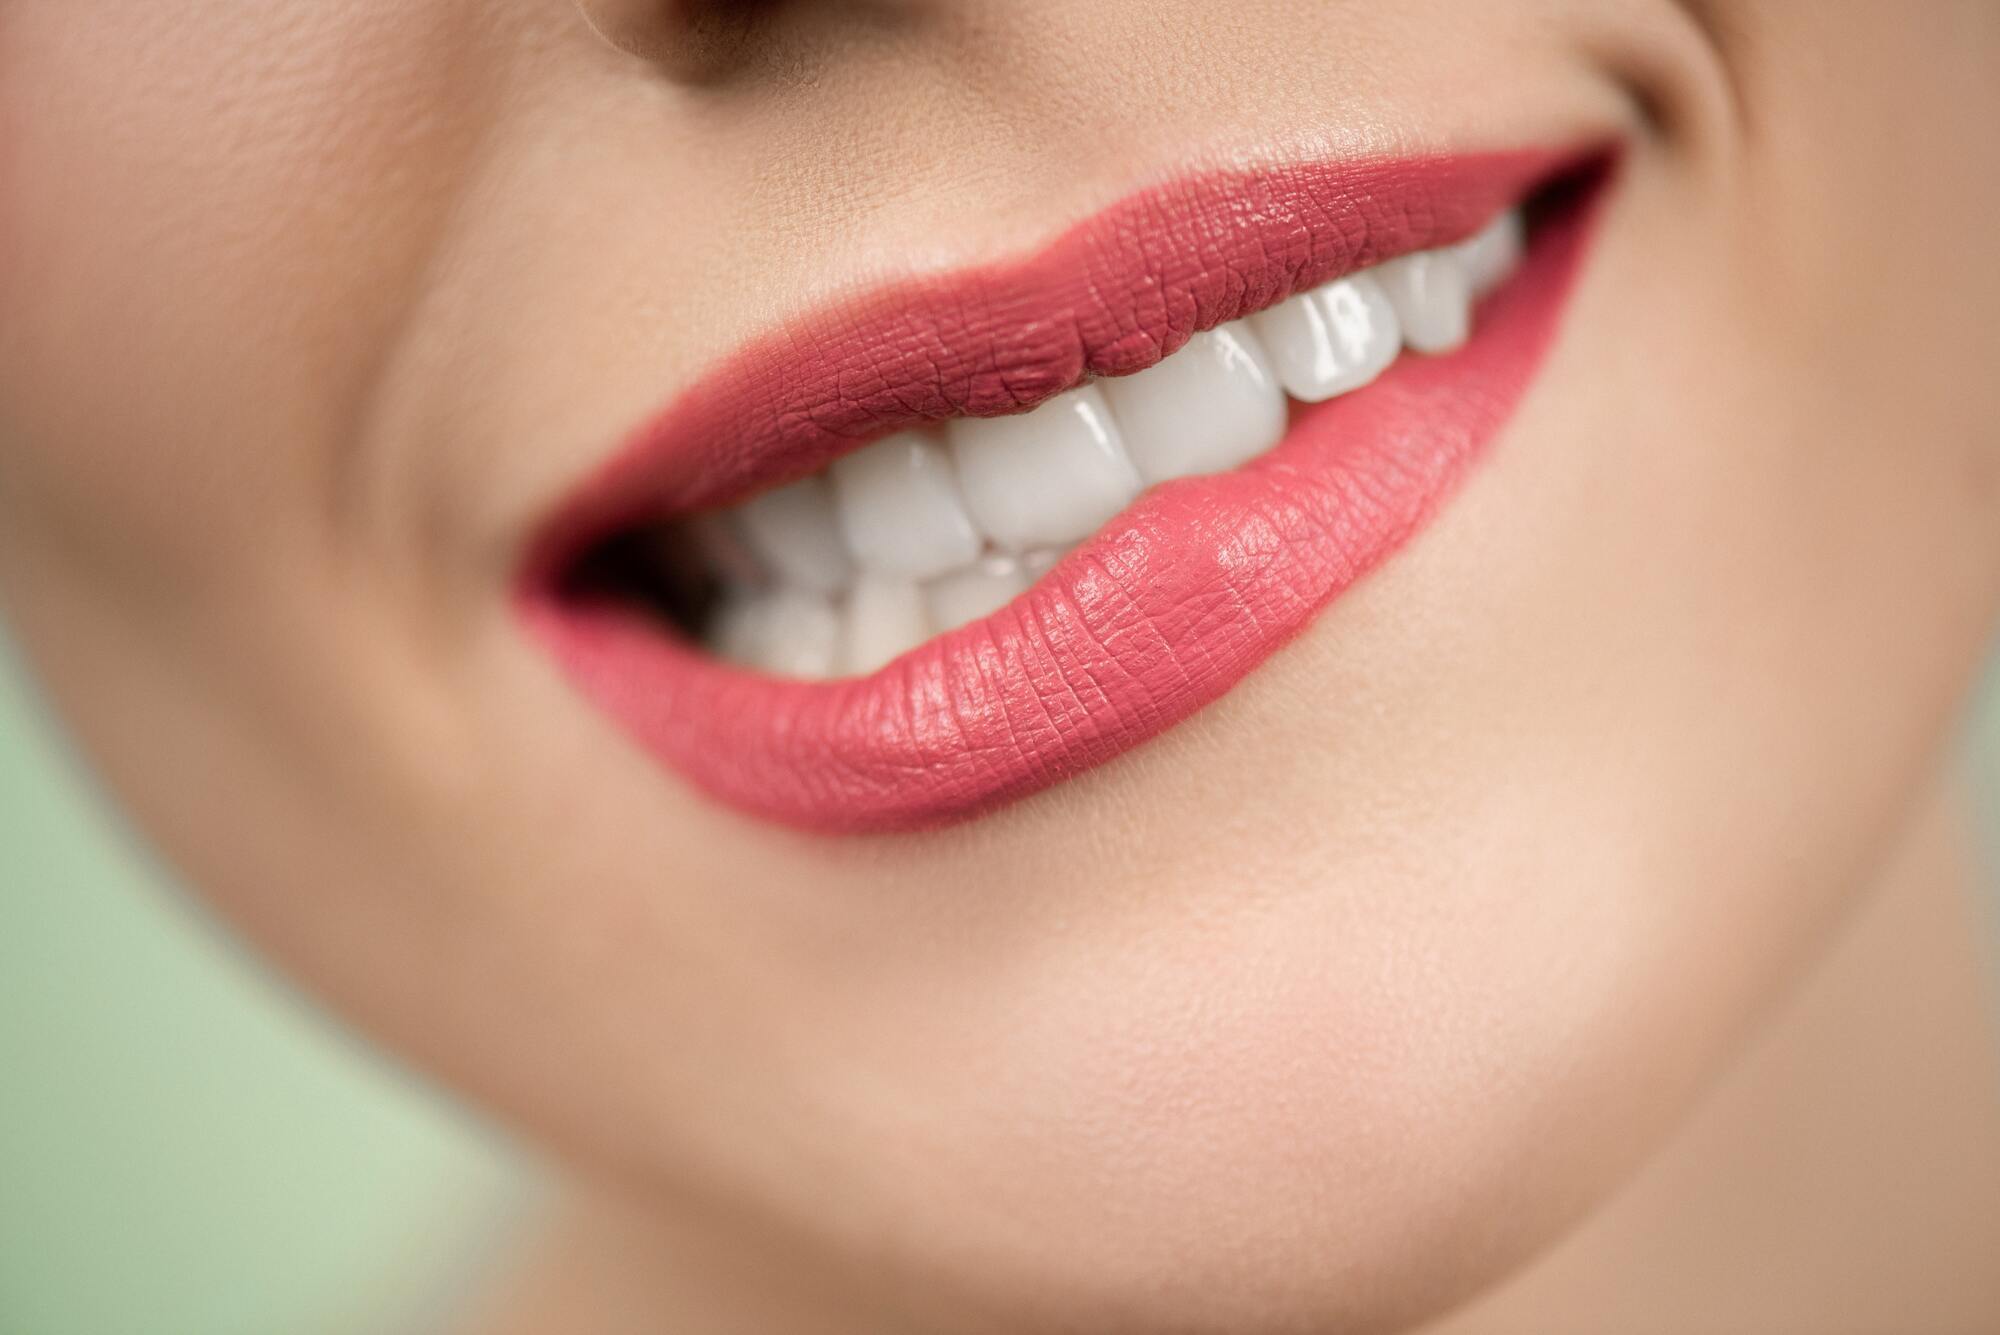 Установка виниров на неподготовленные зубы может привести к их потере.